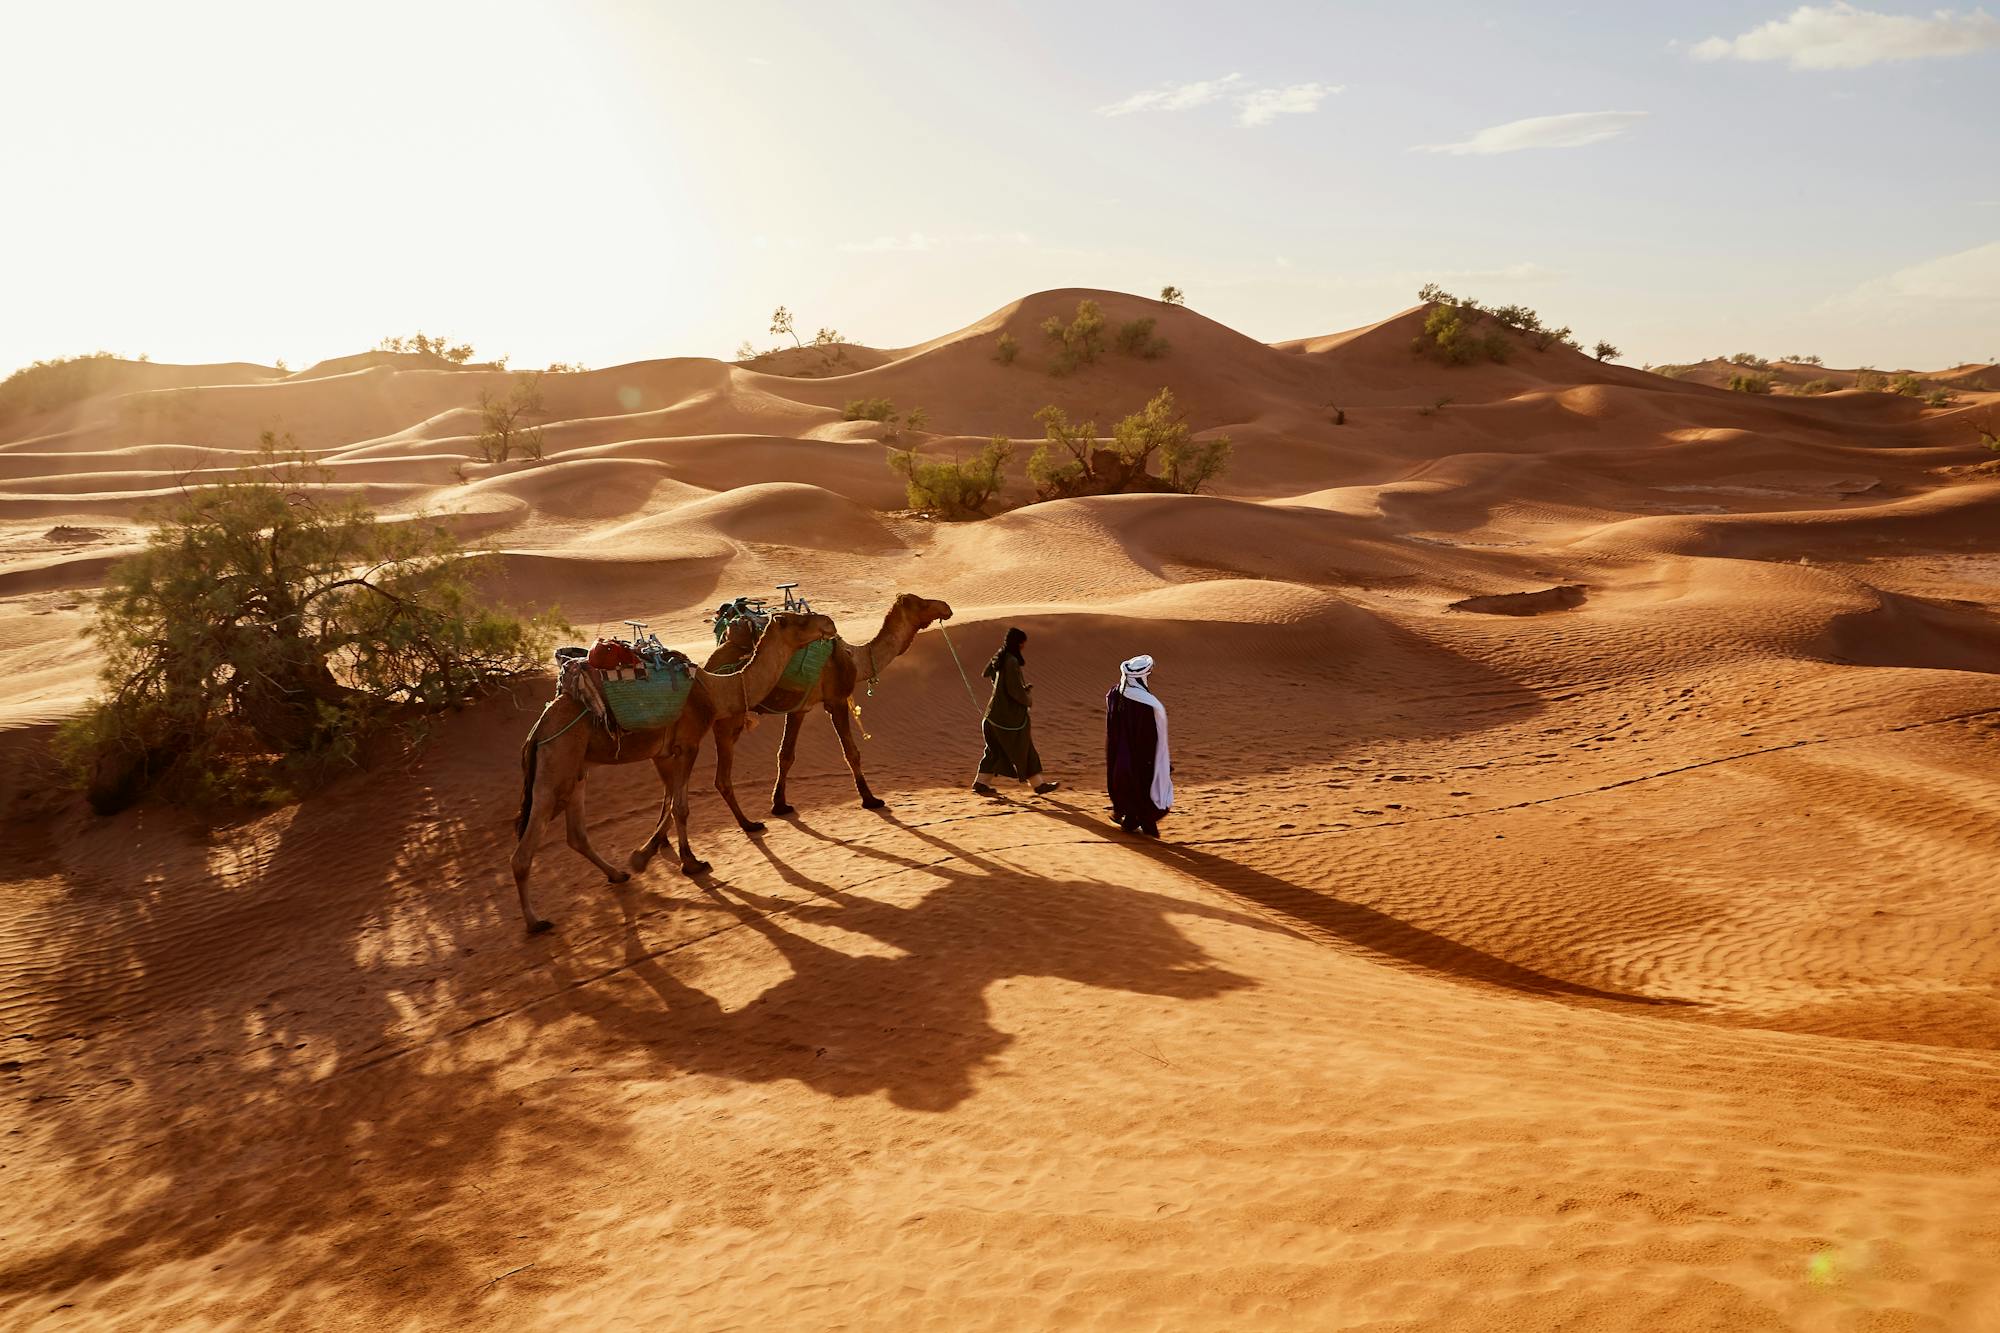 Dwaj Berberzy idą razem ze swoimi wielbłądami przez pustynię.